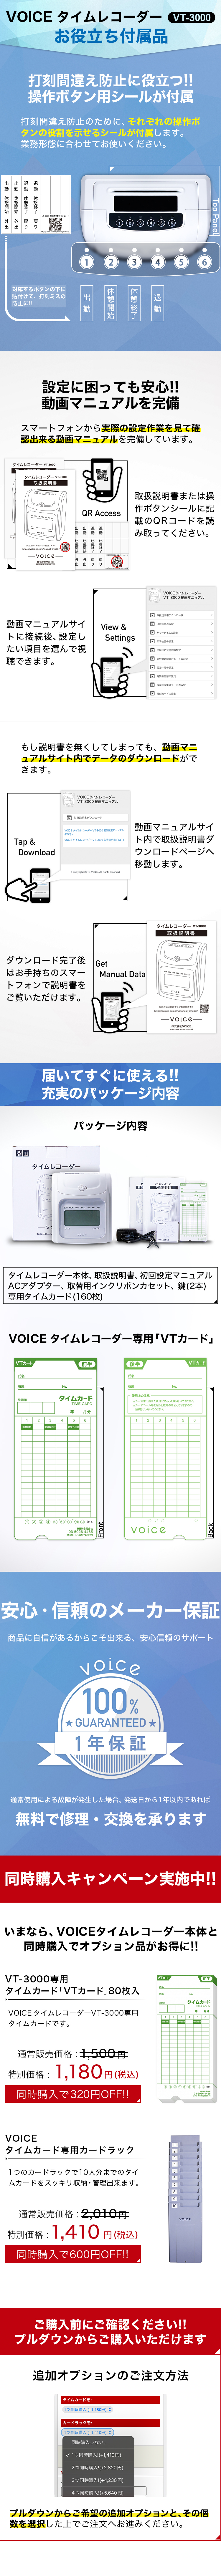 その他 その他 VOICE / 【高機能自動集計】VOICE タイムレコーダー VT-3000